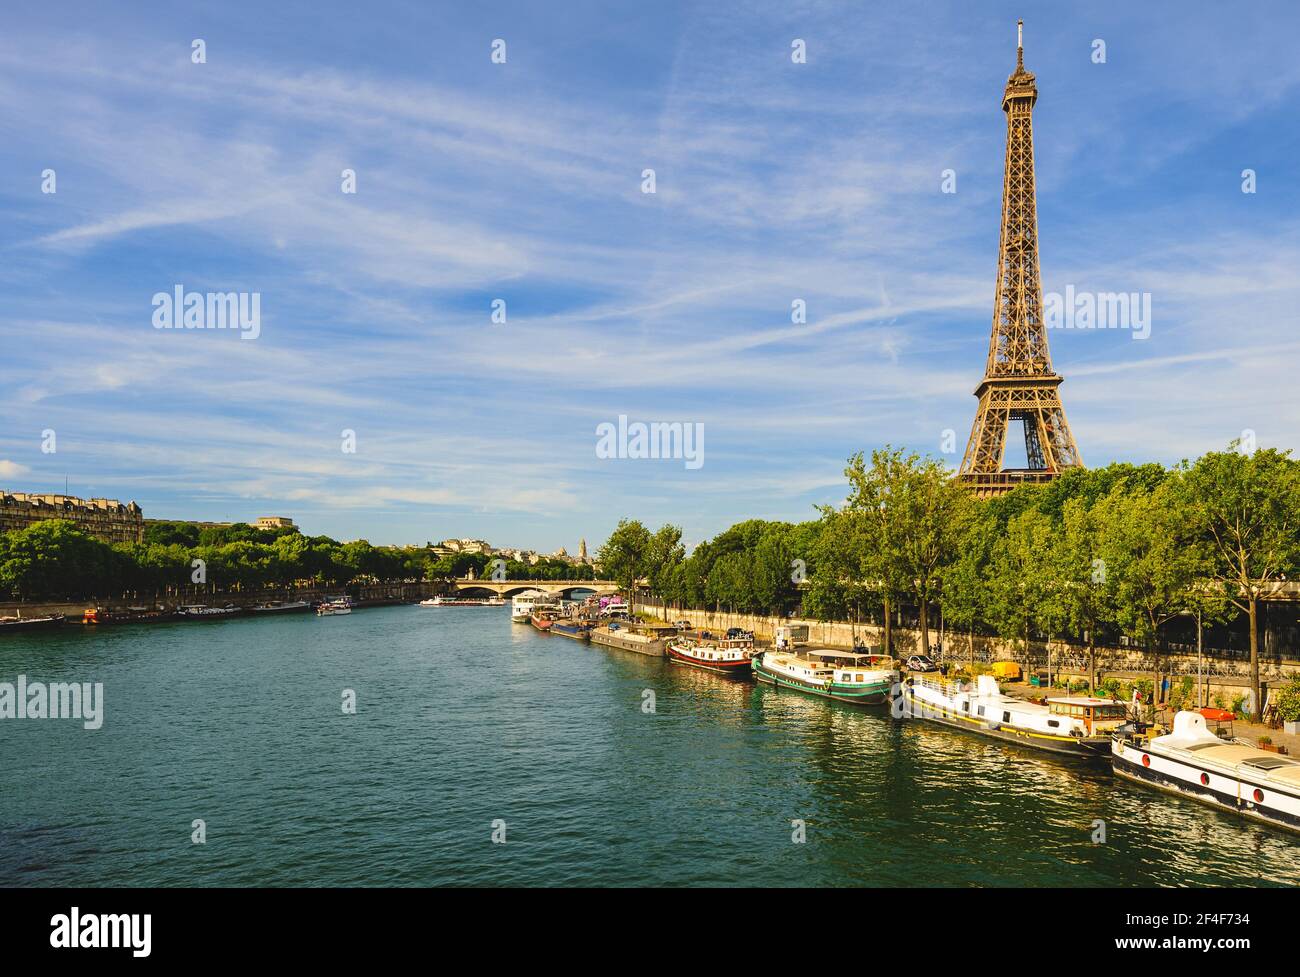 La Tour Eiffel sur la rive gauche de la seine à paris, france Banque D'Images